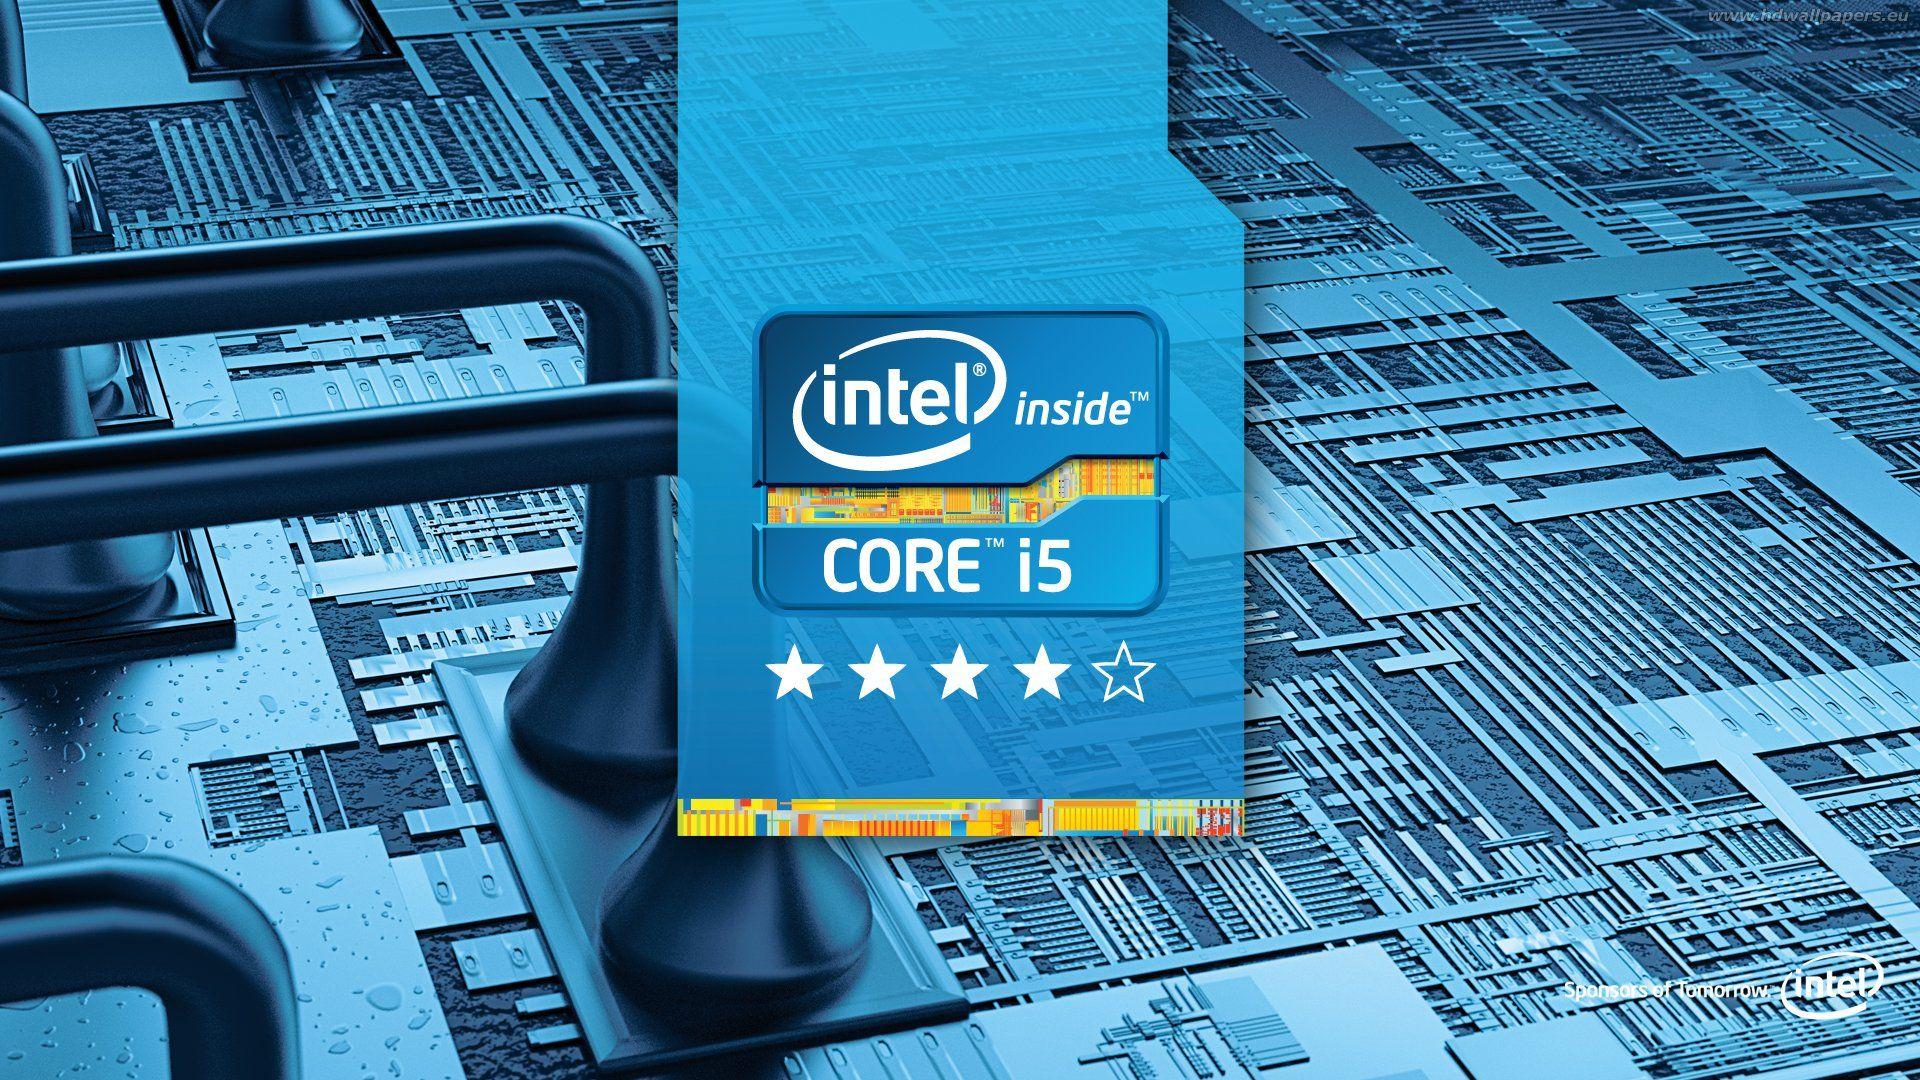 download intel core i5 graphics